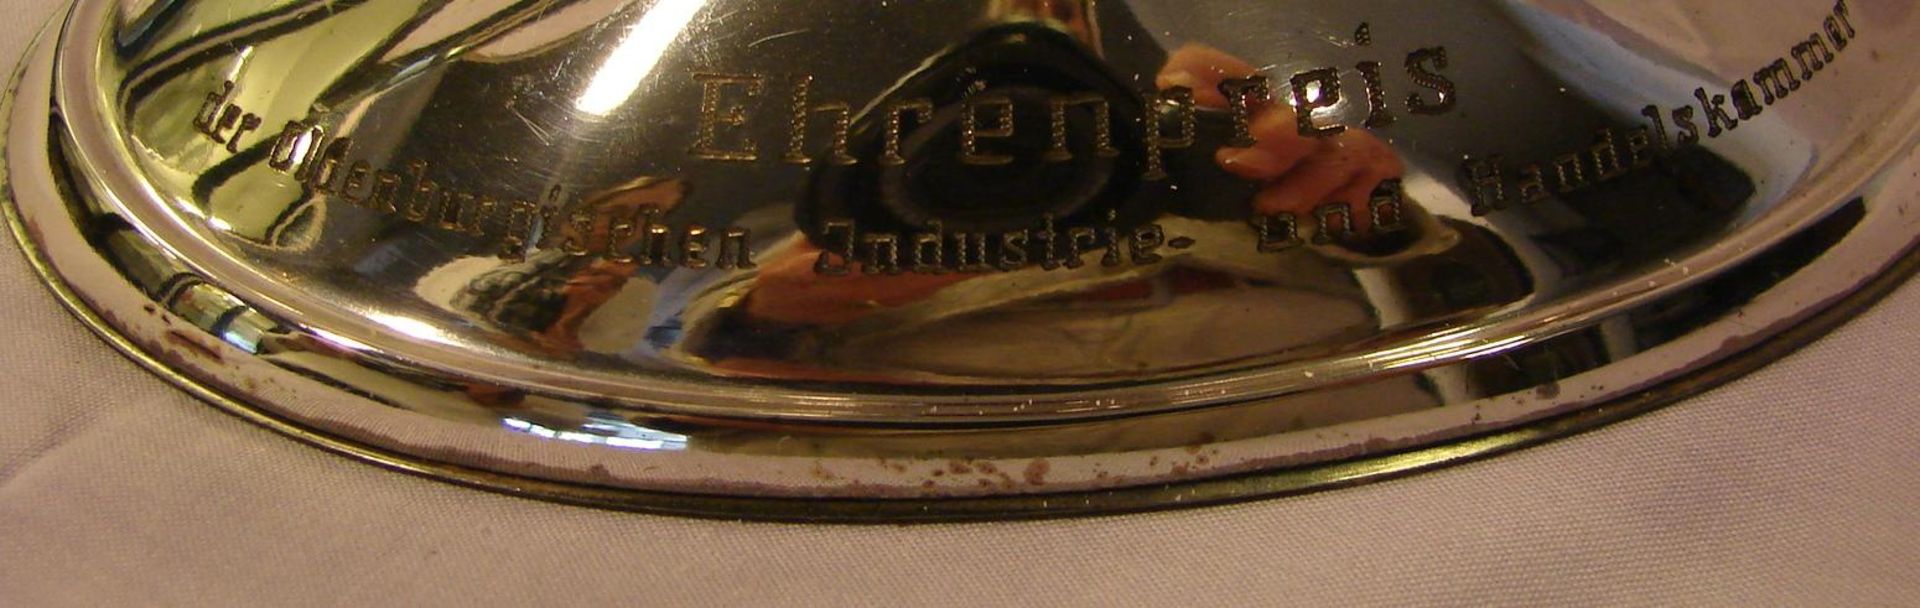 Kerzenleuchter, 3-armig, 835er Silber, deutsch, Wilkens, ovale Form, mit Gravur, Höhe ca. 10, B. 27 - Bild 3 aus 3